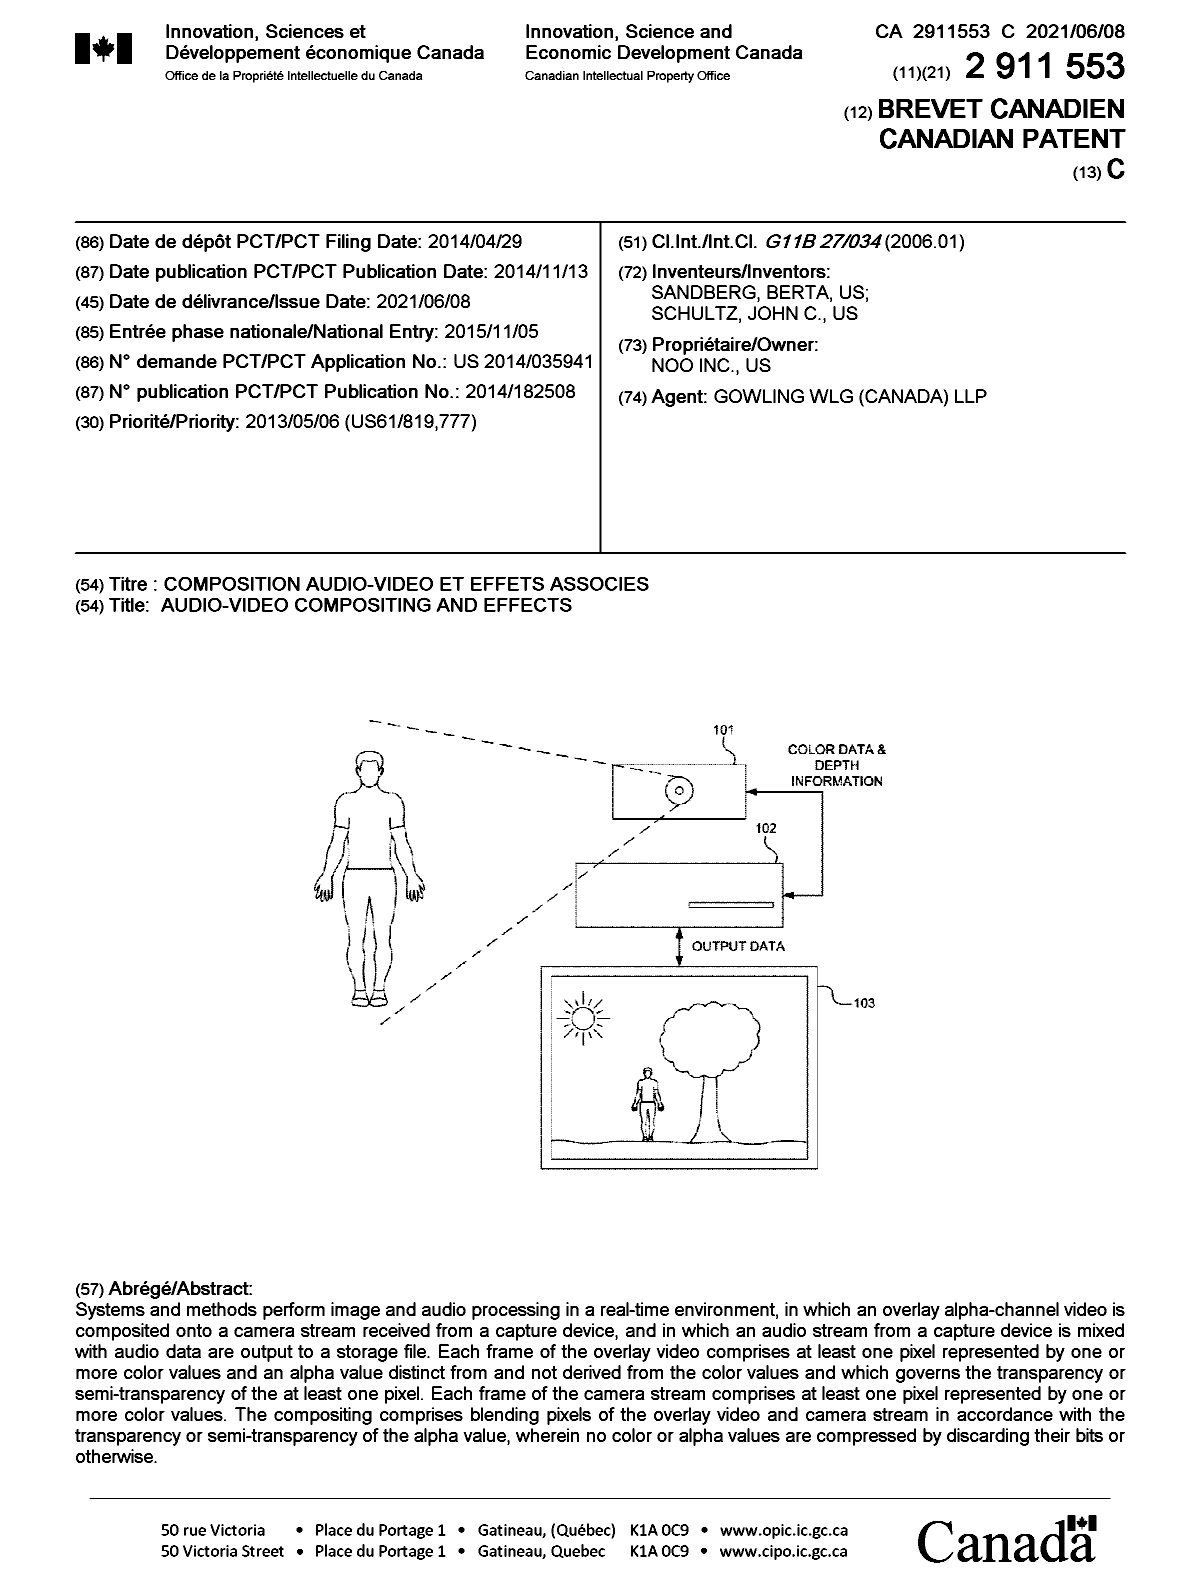 Document de brevet canadien 2911553. Page couverture 20210520. Image 1 de 1